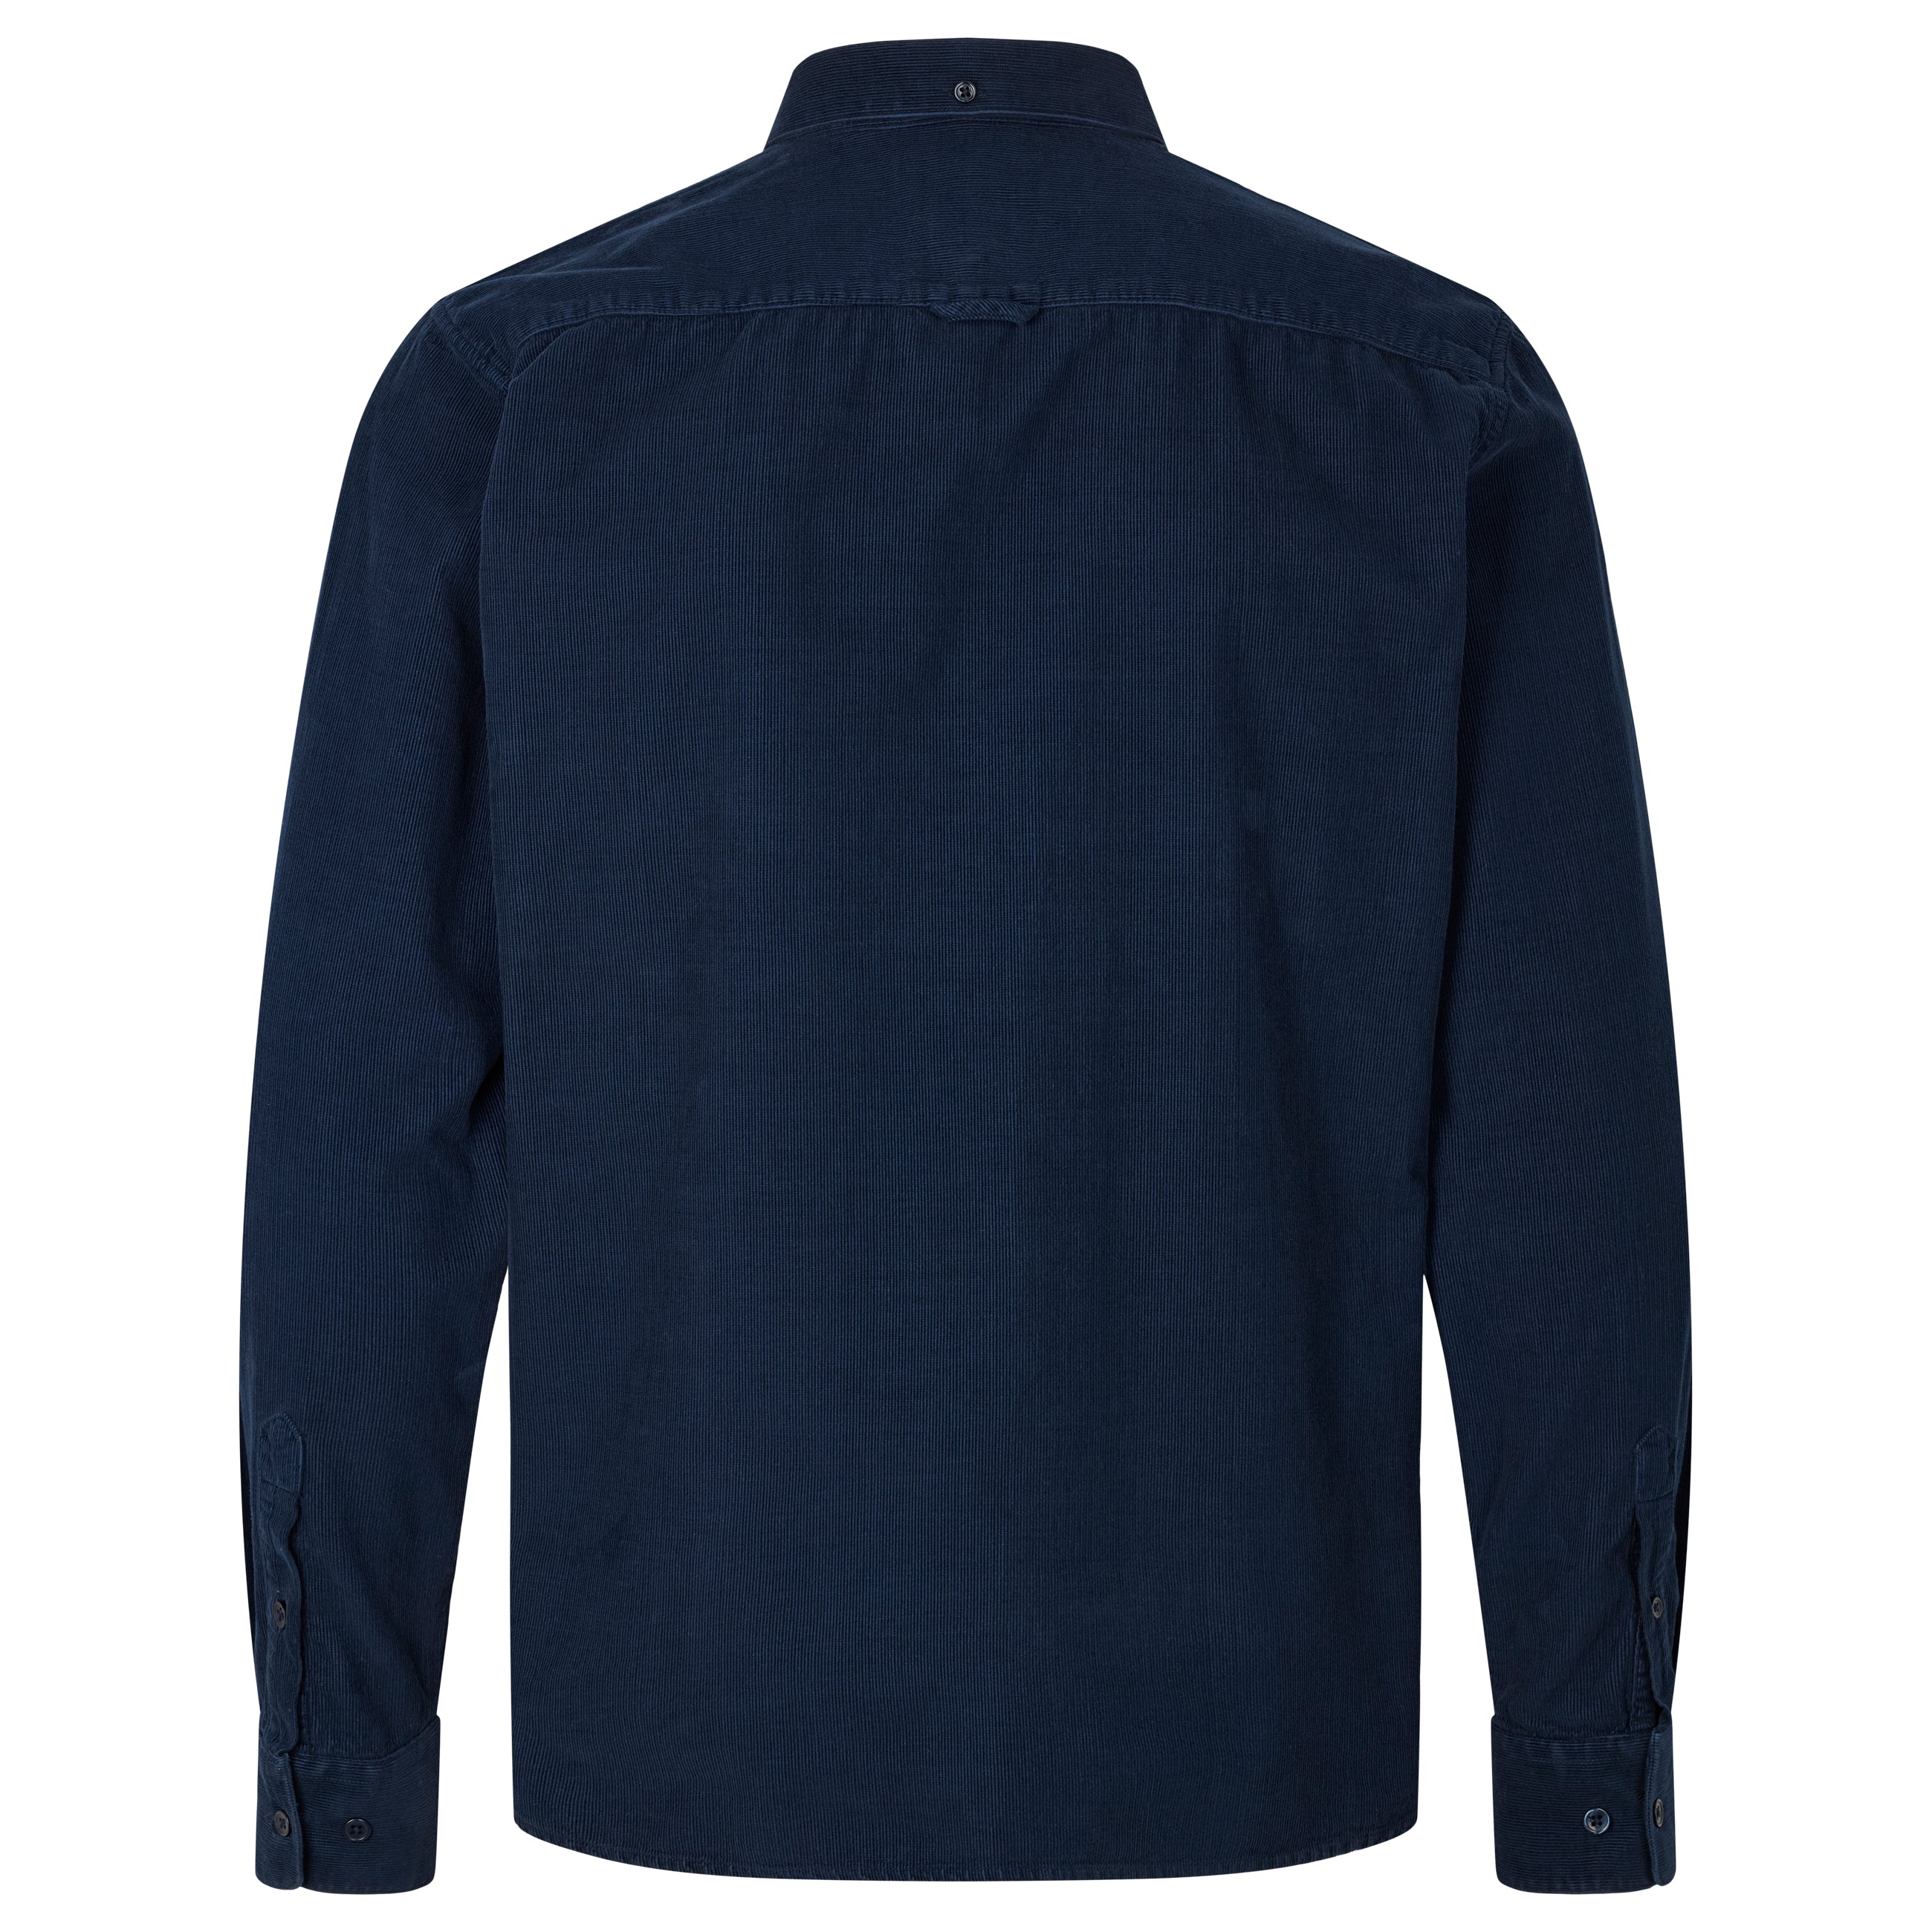 By Garment Makers Vincent Corduroy Shirt Shirt LS 3096 Navy Blazer